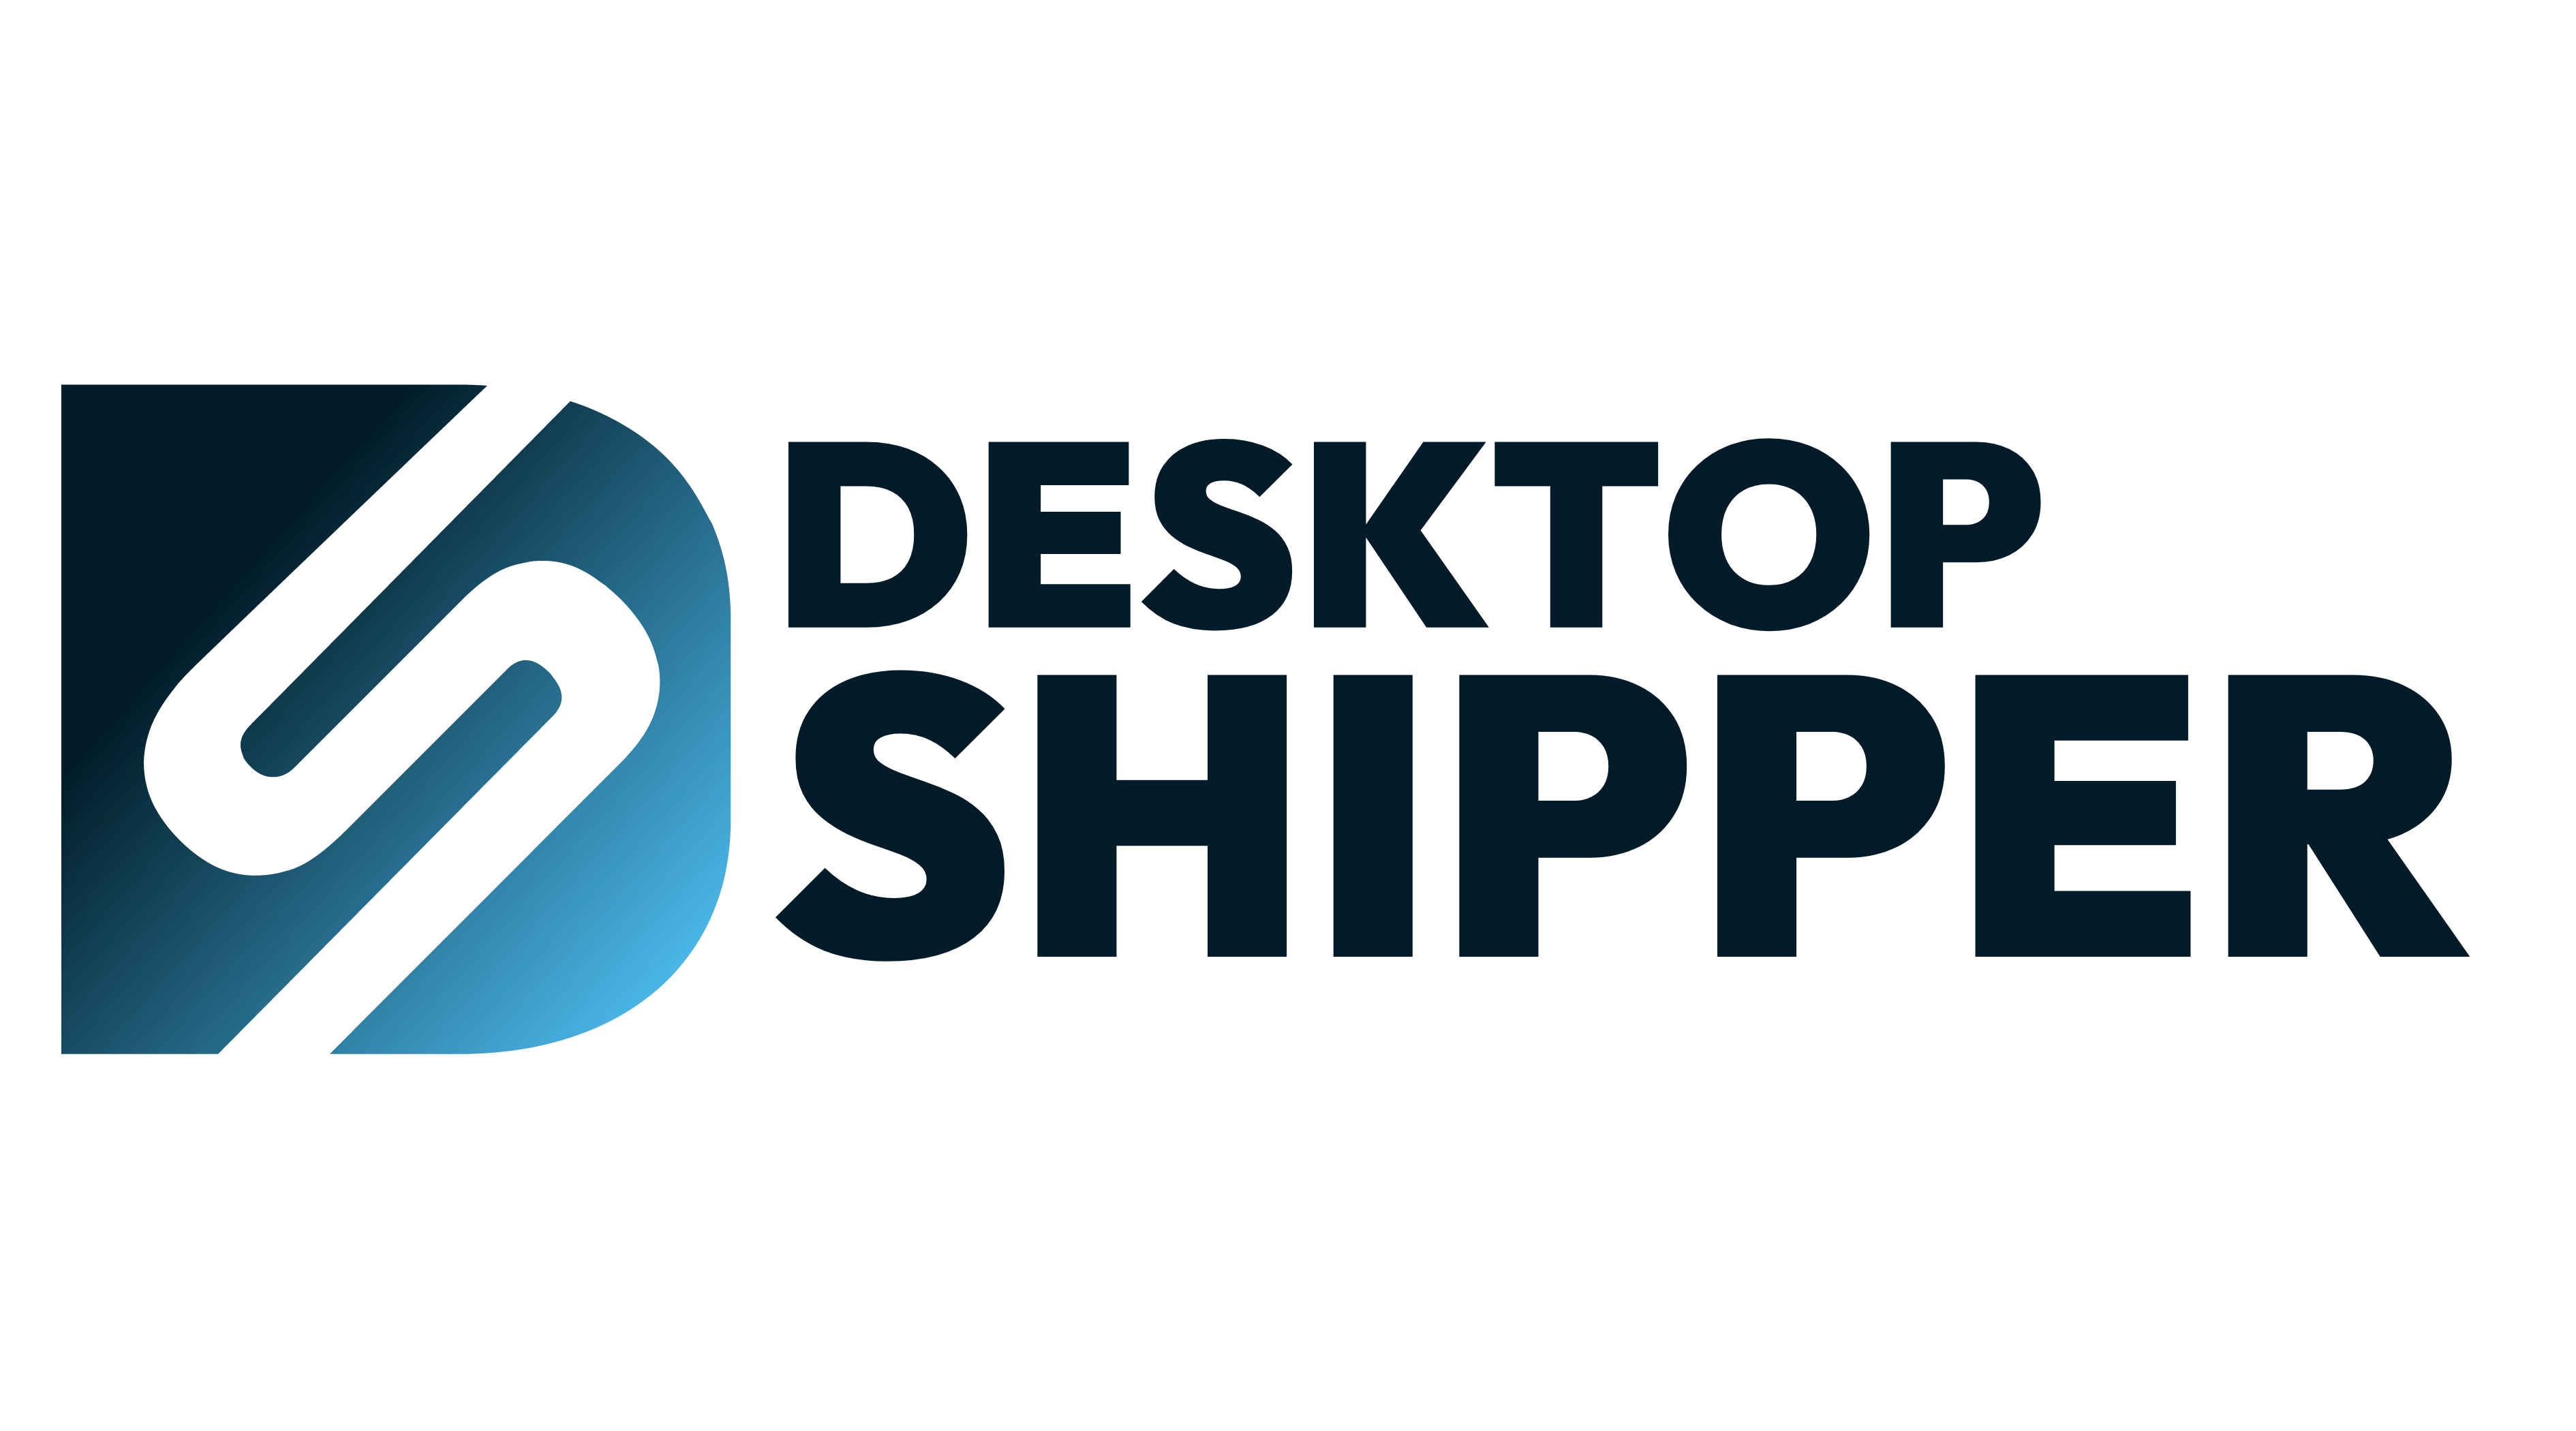 DesktopShipper Transparent Background Logo 2